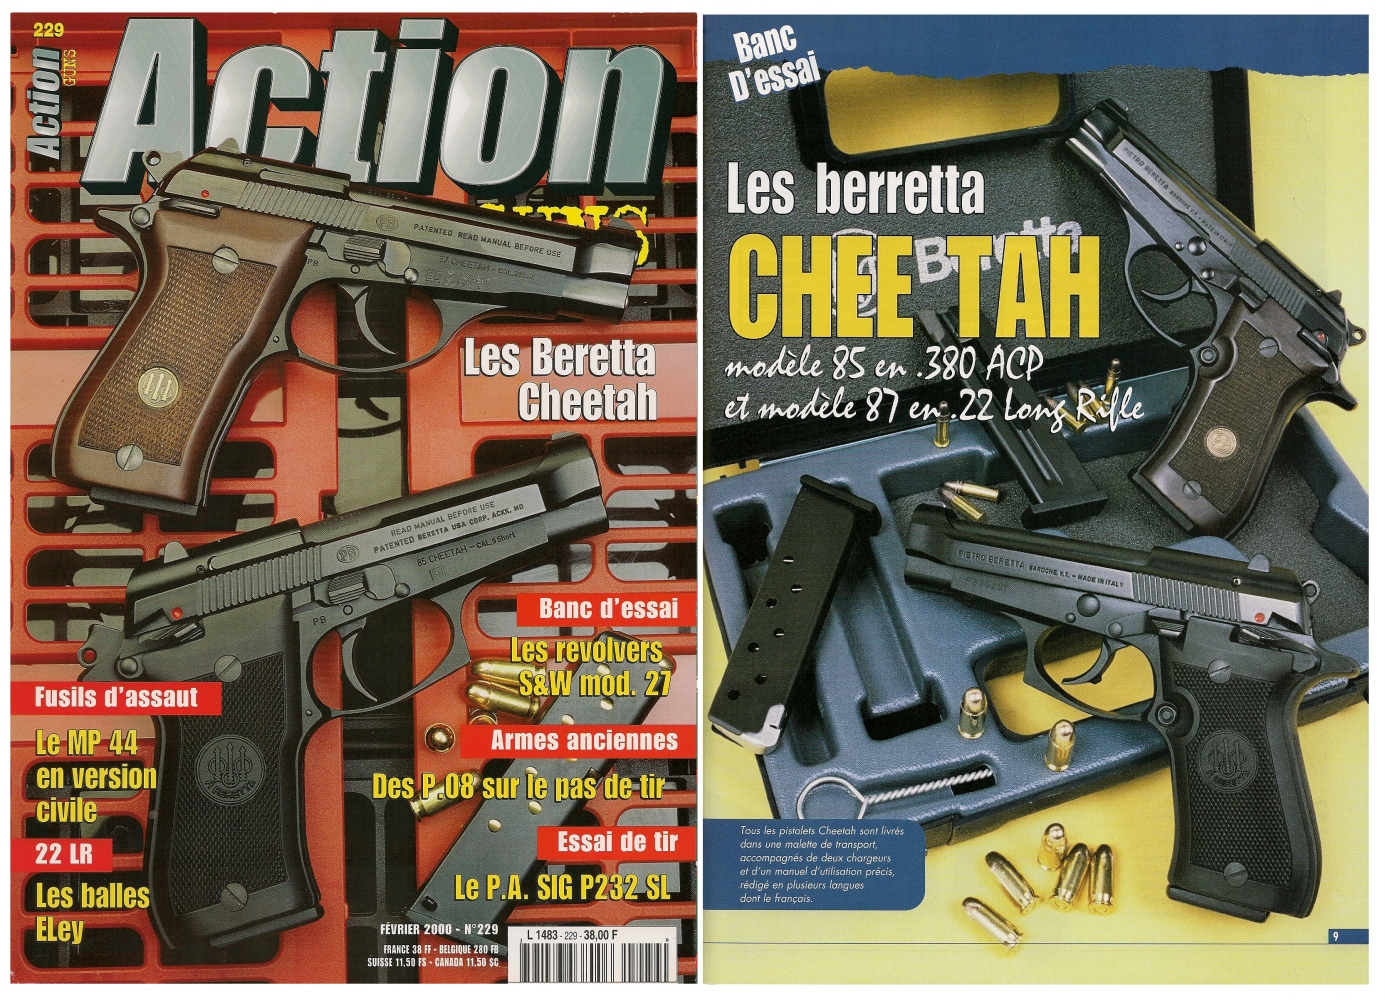 Le banc d’essai des pistolets Beretta Cheetah modèles 85 et 87 a été publié sur 7 pages dans le magazine Action Guns n° 229 (février 2000).